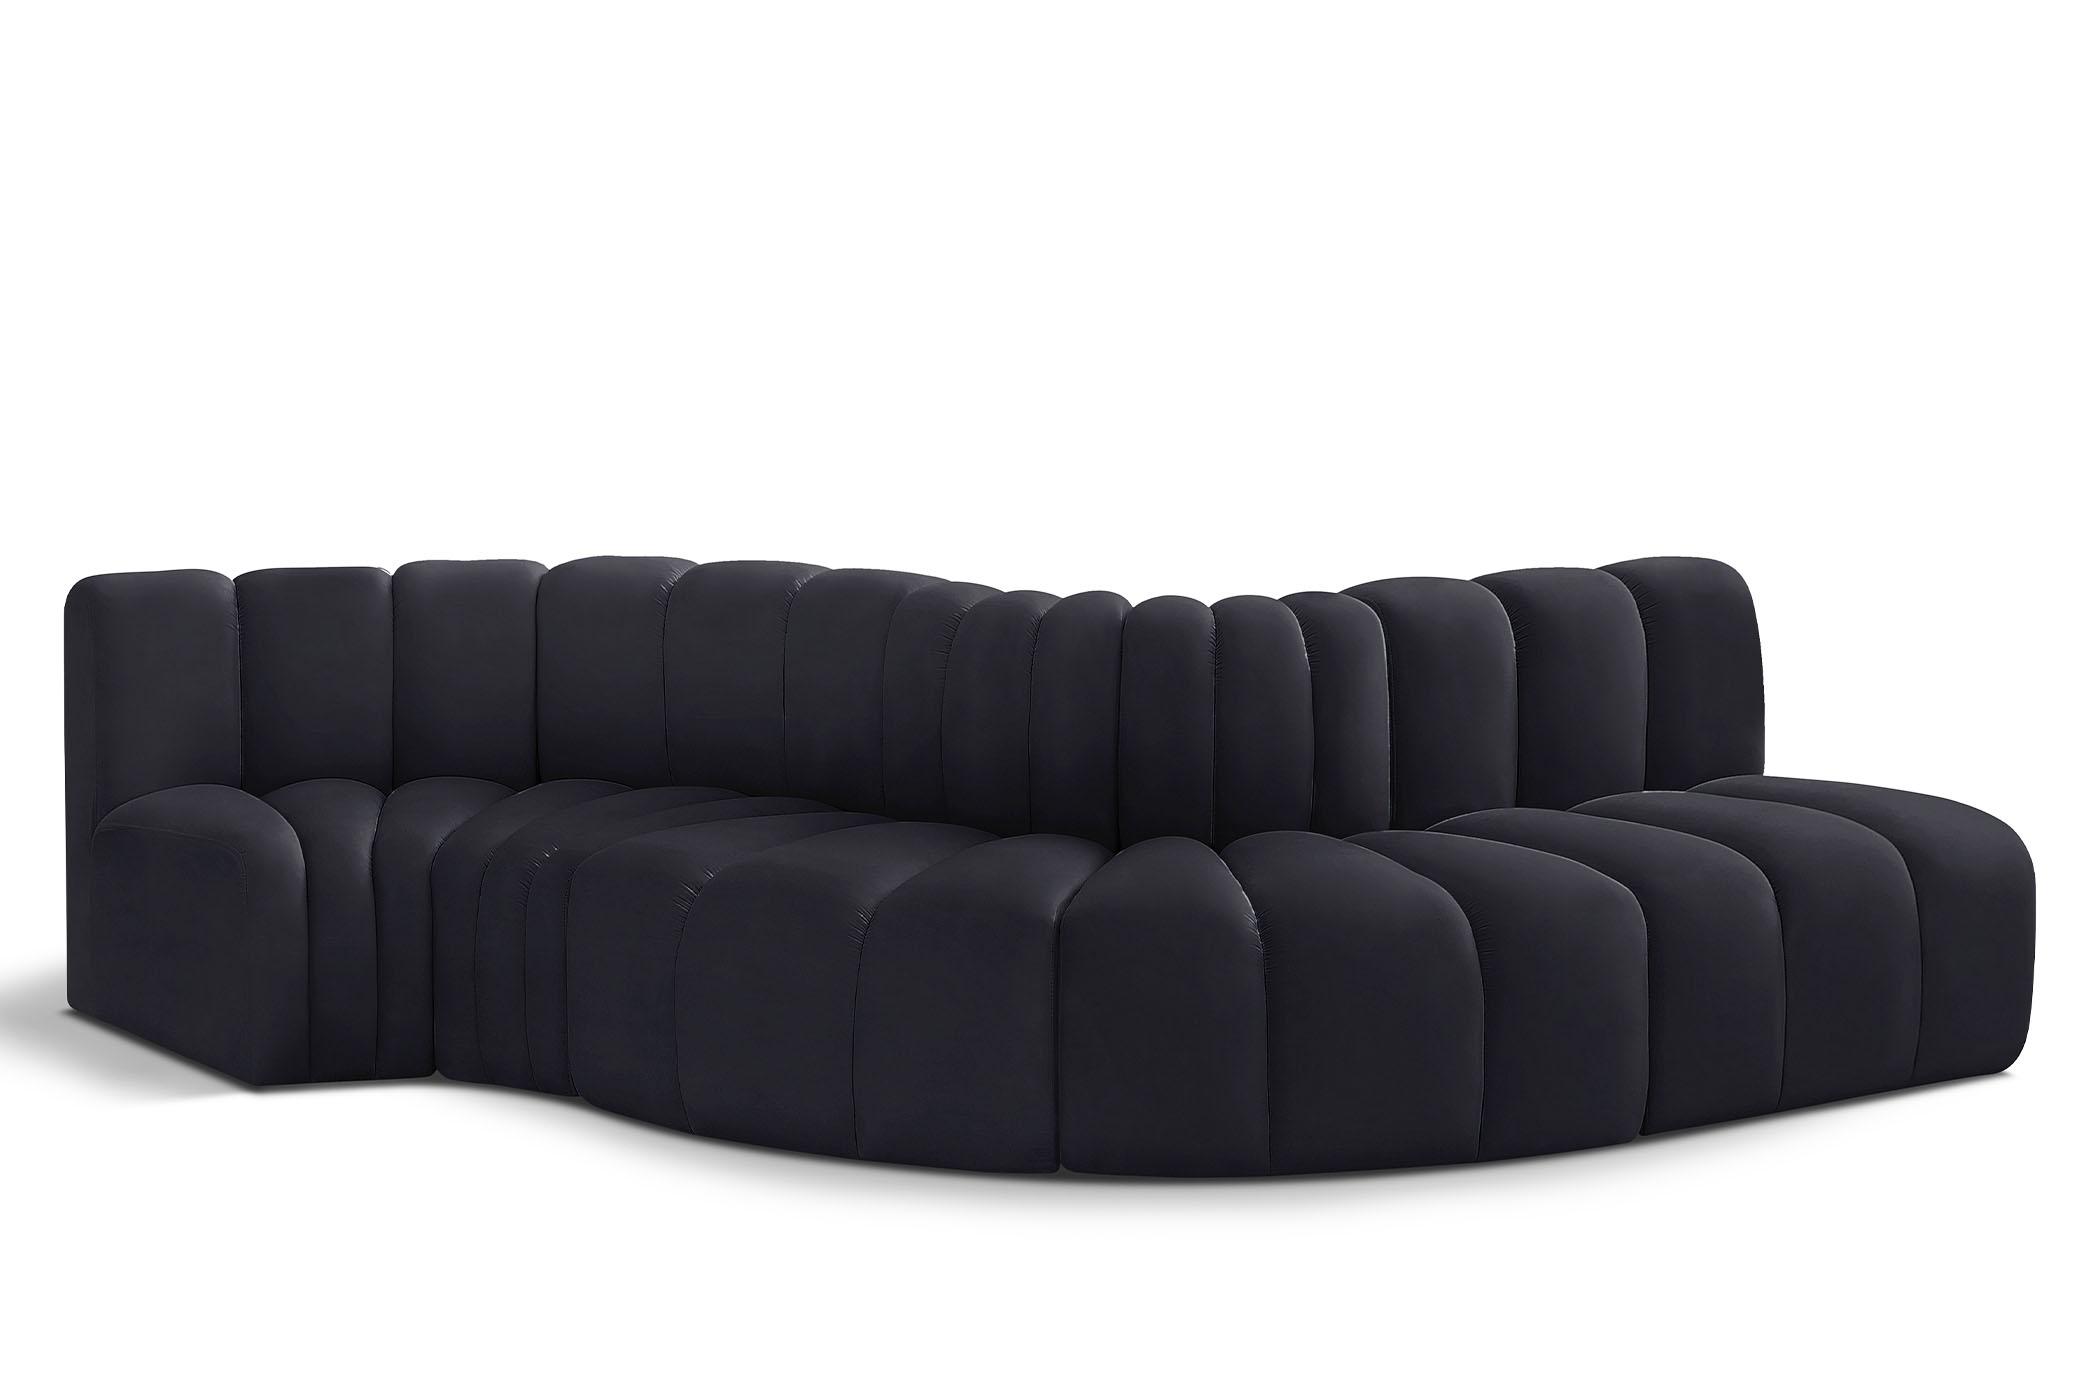 Contemporary, Modern Modular Sectional Sofa ARC 103Black-S5B 103Black-S5B in Black Velvet